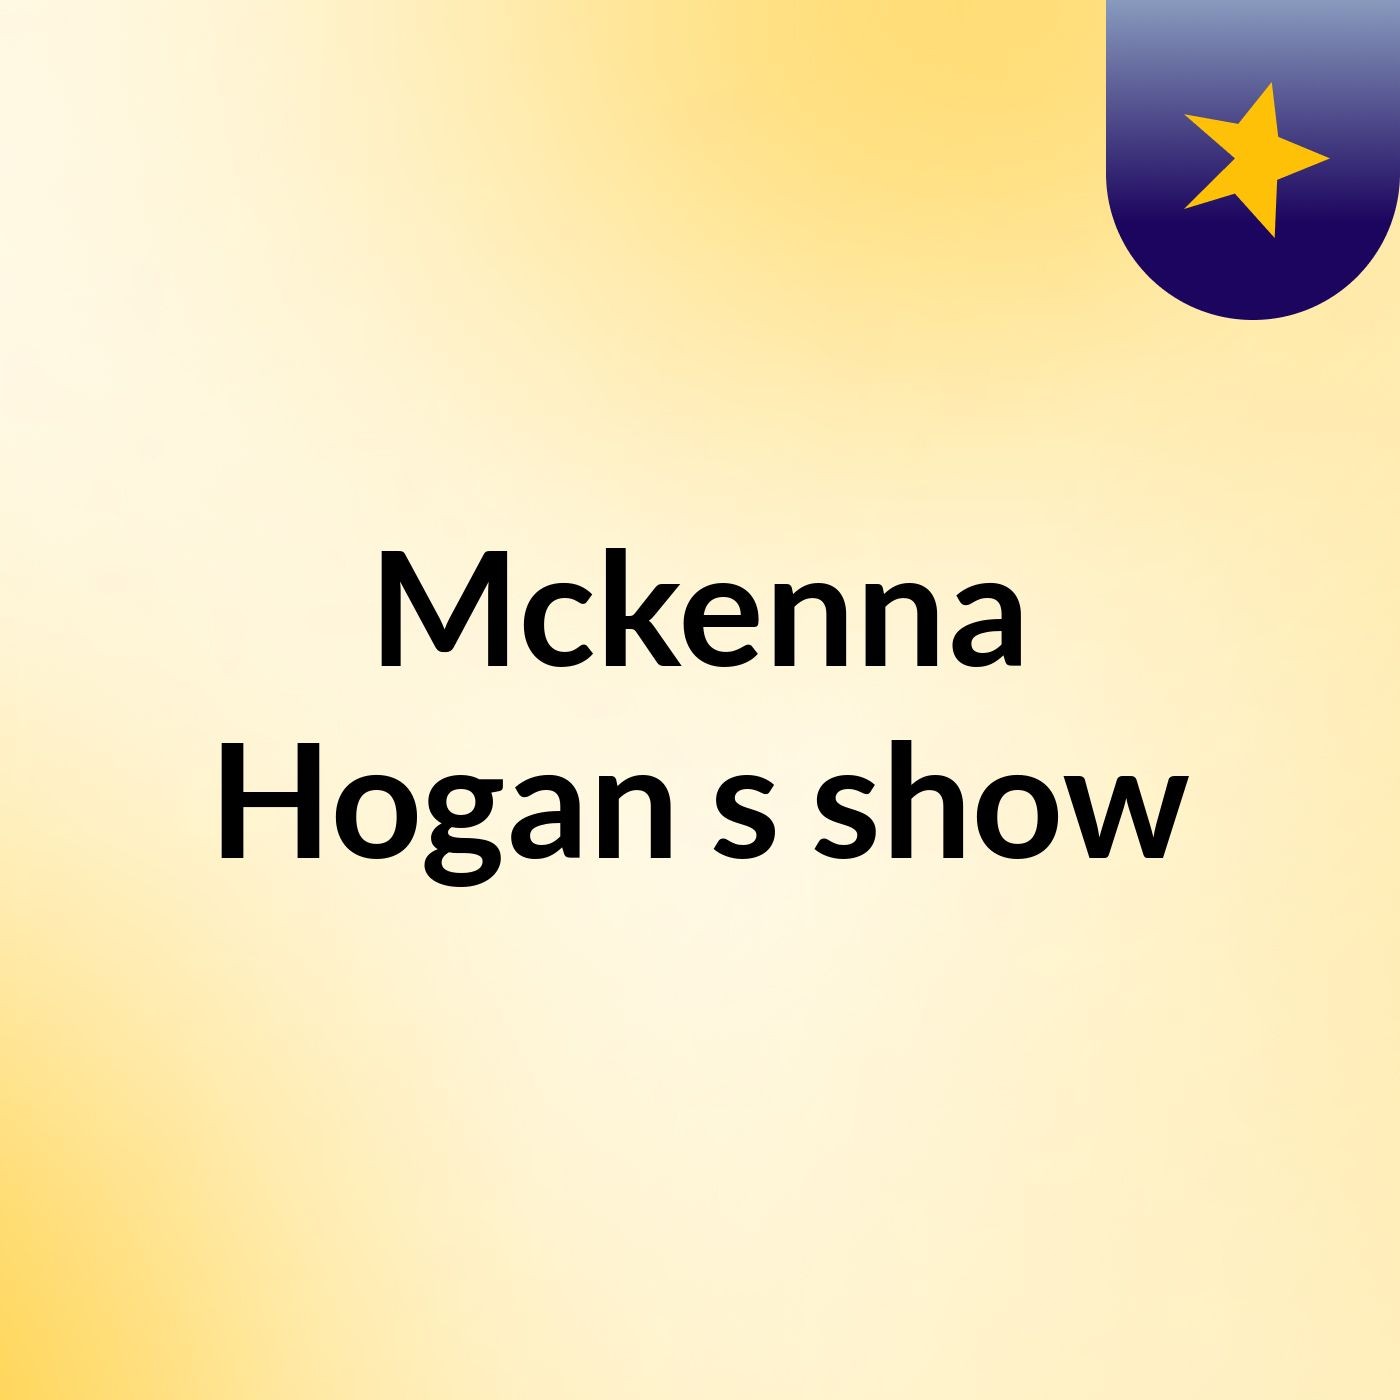 Mckenna Hogan's show